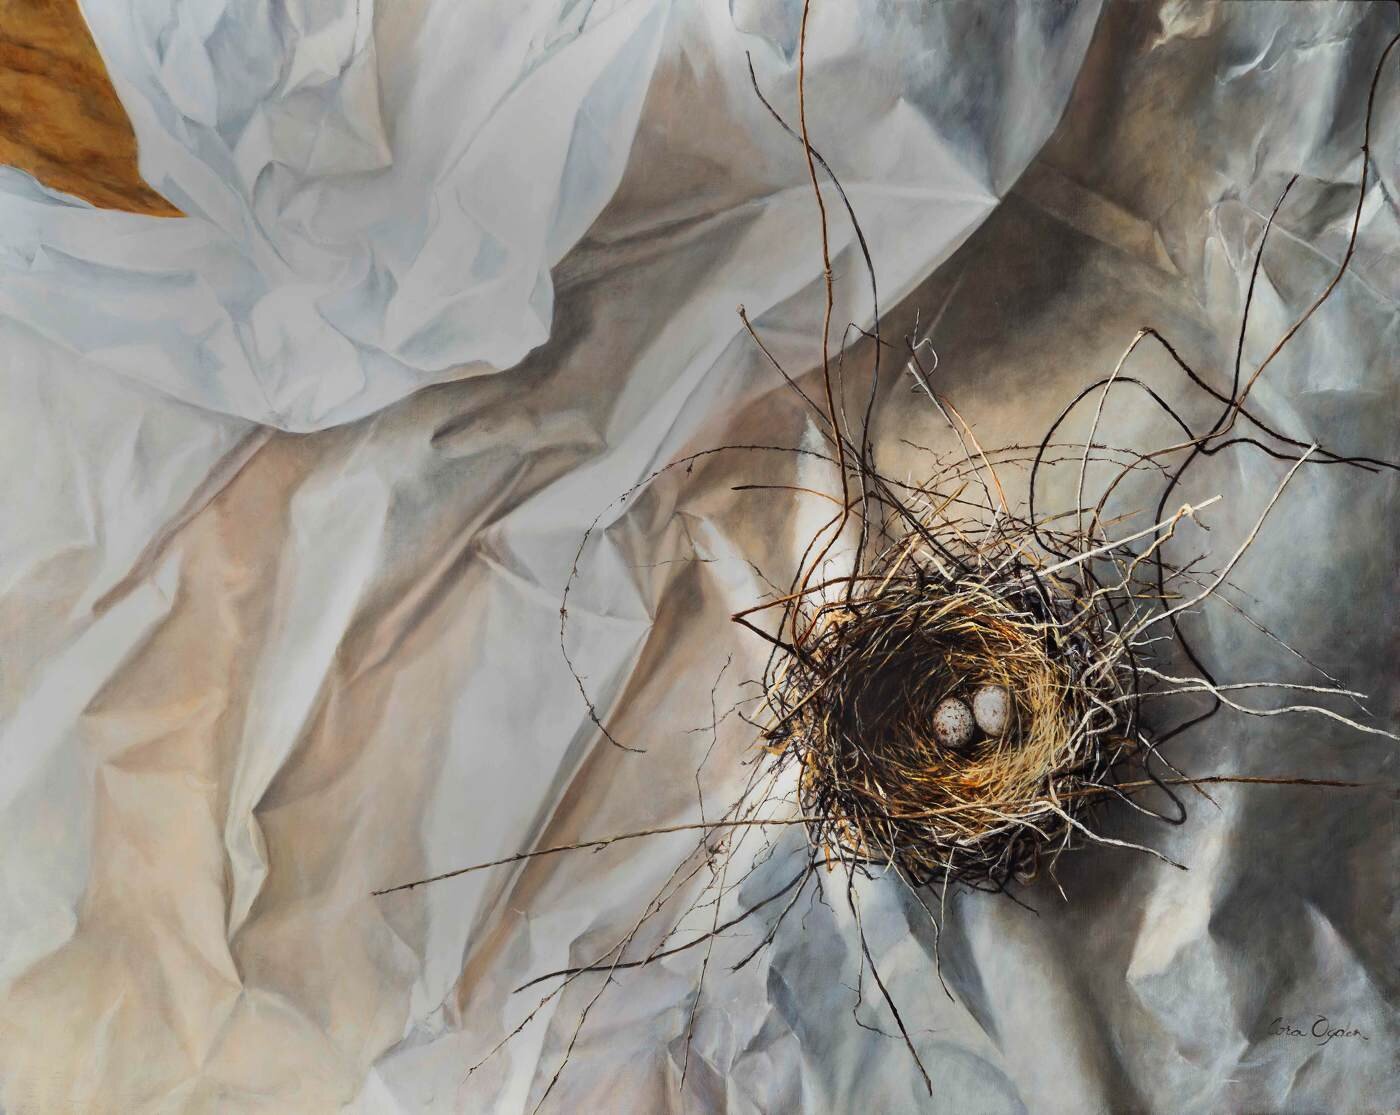 The Nest.jpg